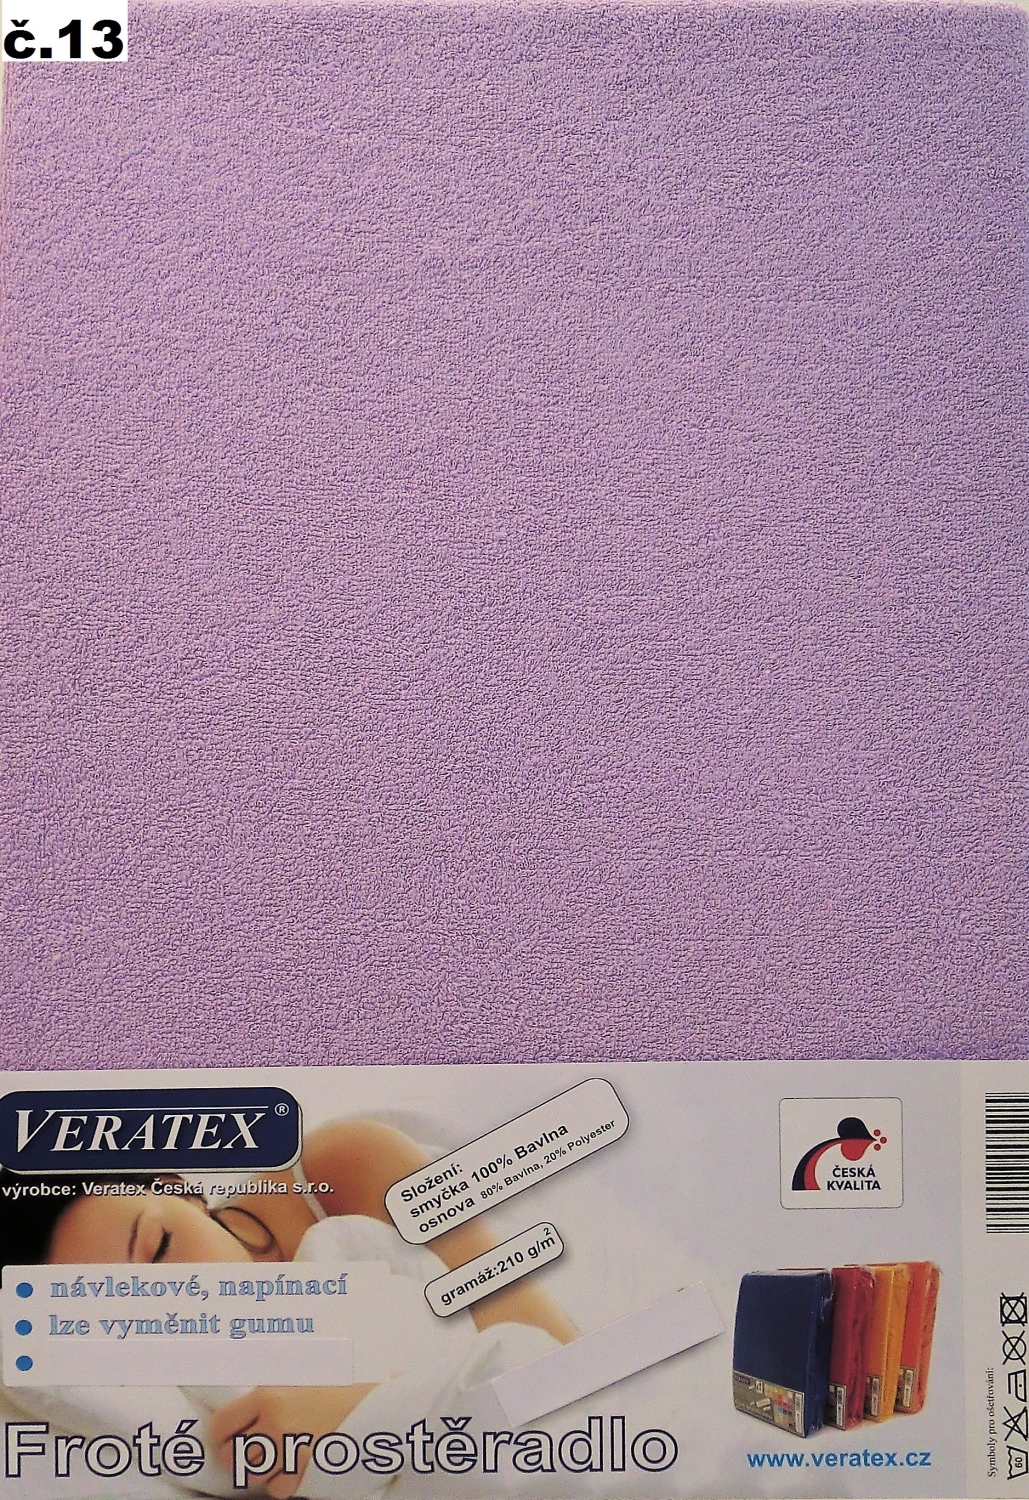 Veratex Froté prostěradlo 140x220/16 cm (č.13-fialková) 140 x 220 cm